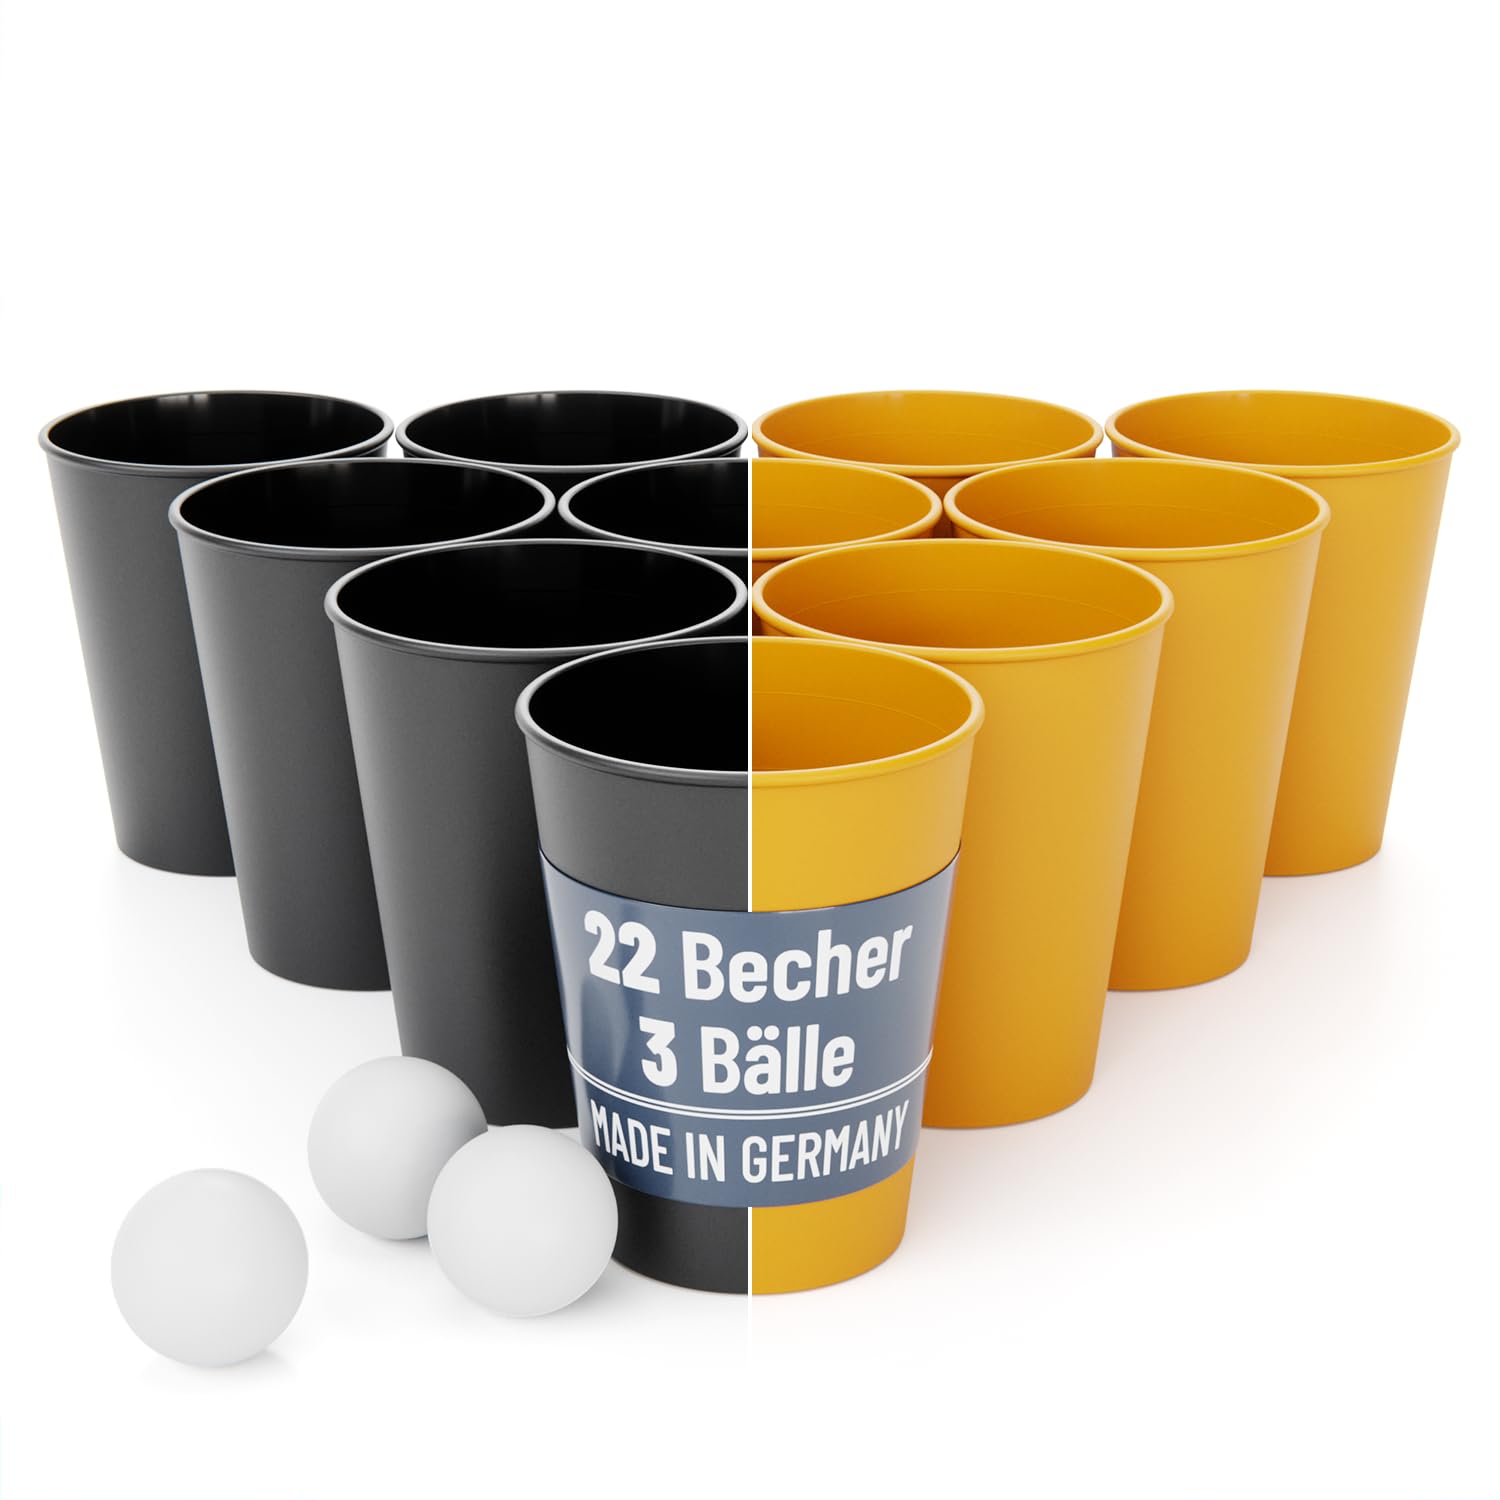 SoPro 22er Set Party Becher Plastik spühlmaschinenfest inkl. 3 Bälle - Made in Germany - Hartplastik Mehrweg Partybecher wiederverwendbar 0,5 Liter - Party Becher Plastik, Plastikbecher, Becher Set